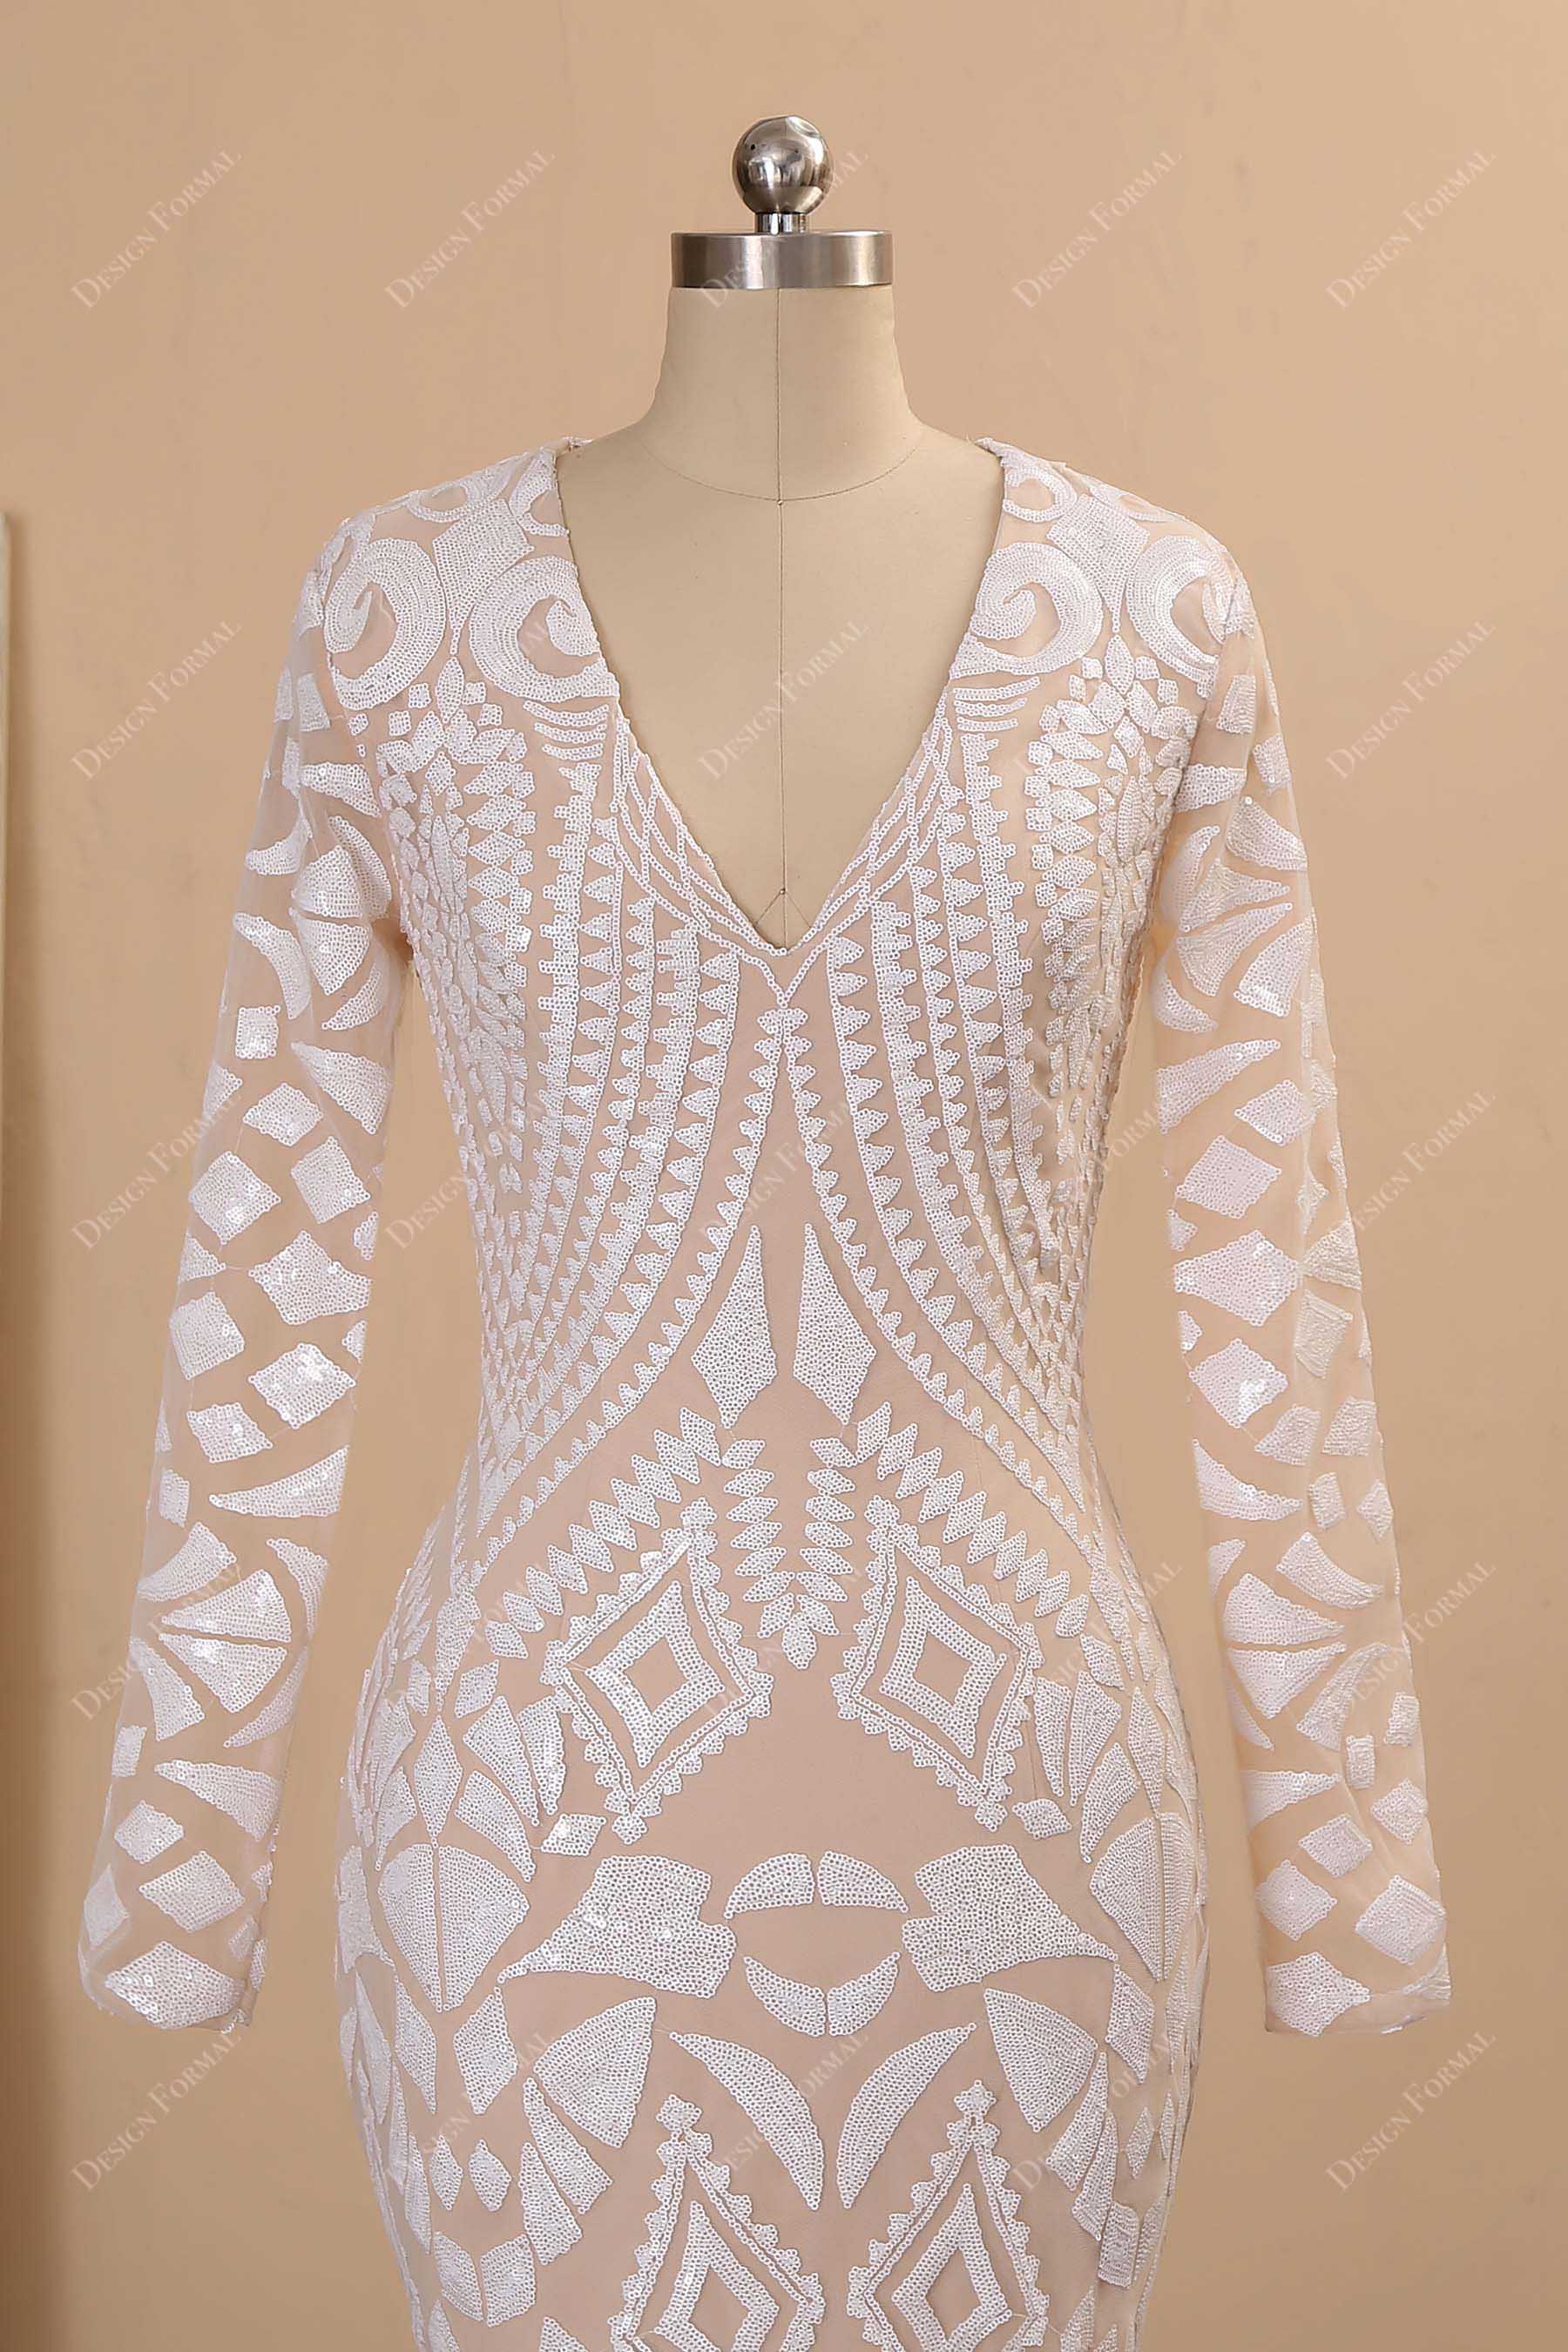 V-neck unique patterned sequin prom dress